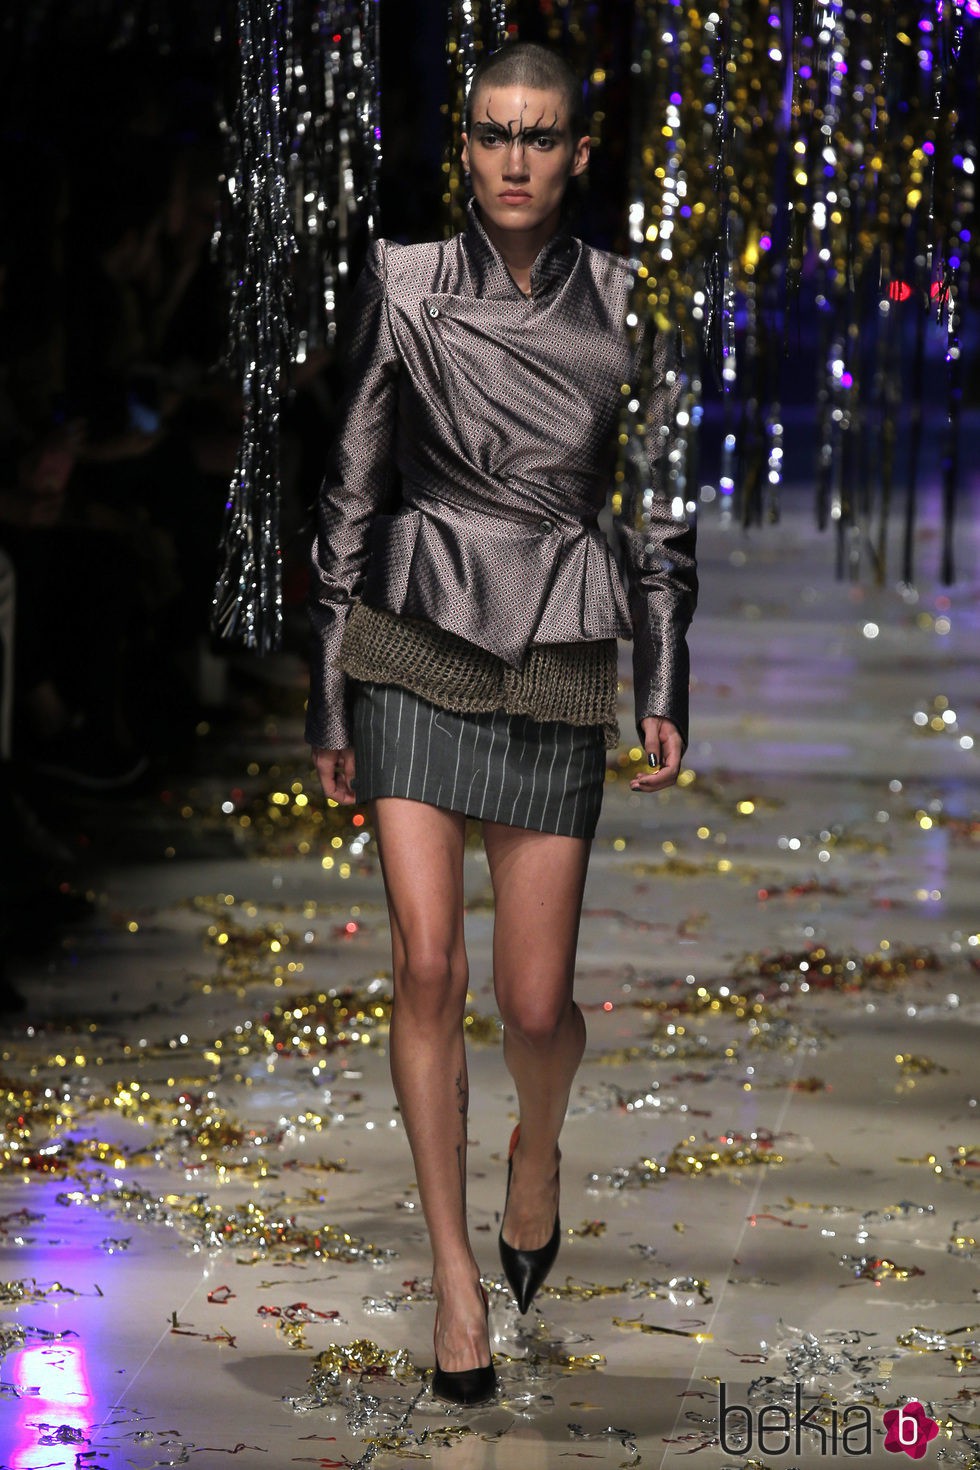 Chaqueta estampada y falda de rayas de la colección otoño/invierno 2015 de Vivienne Westwood